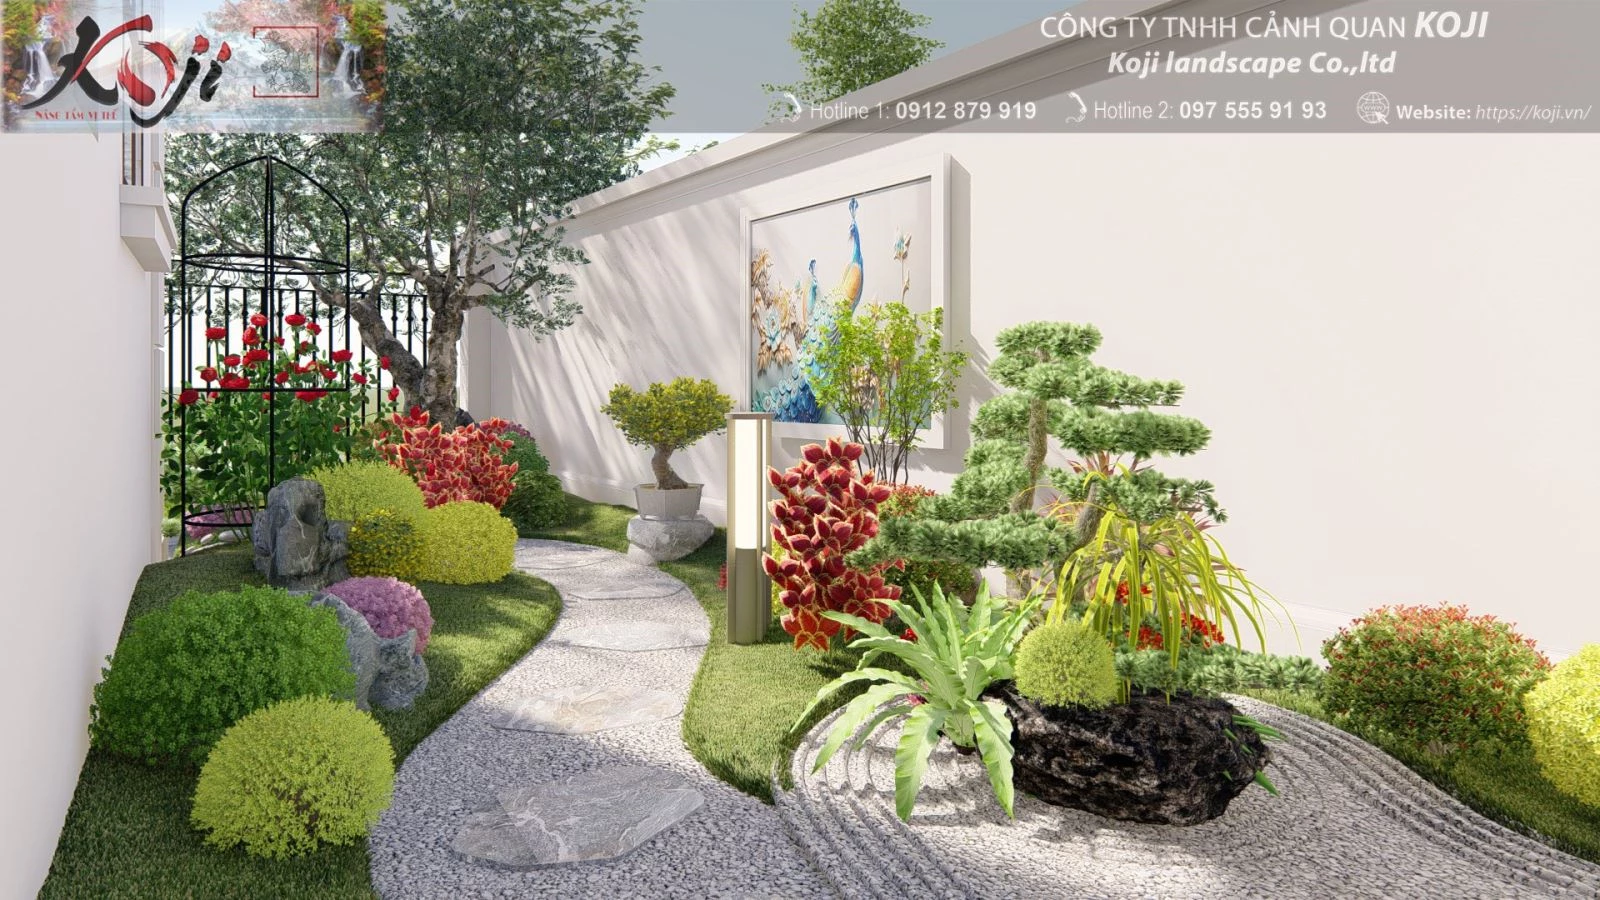 Gợi ý thiết kế sân vườn bên hông nhà tạo điểm nhấn ấn tượng